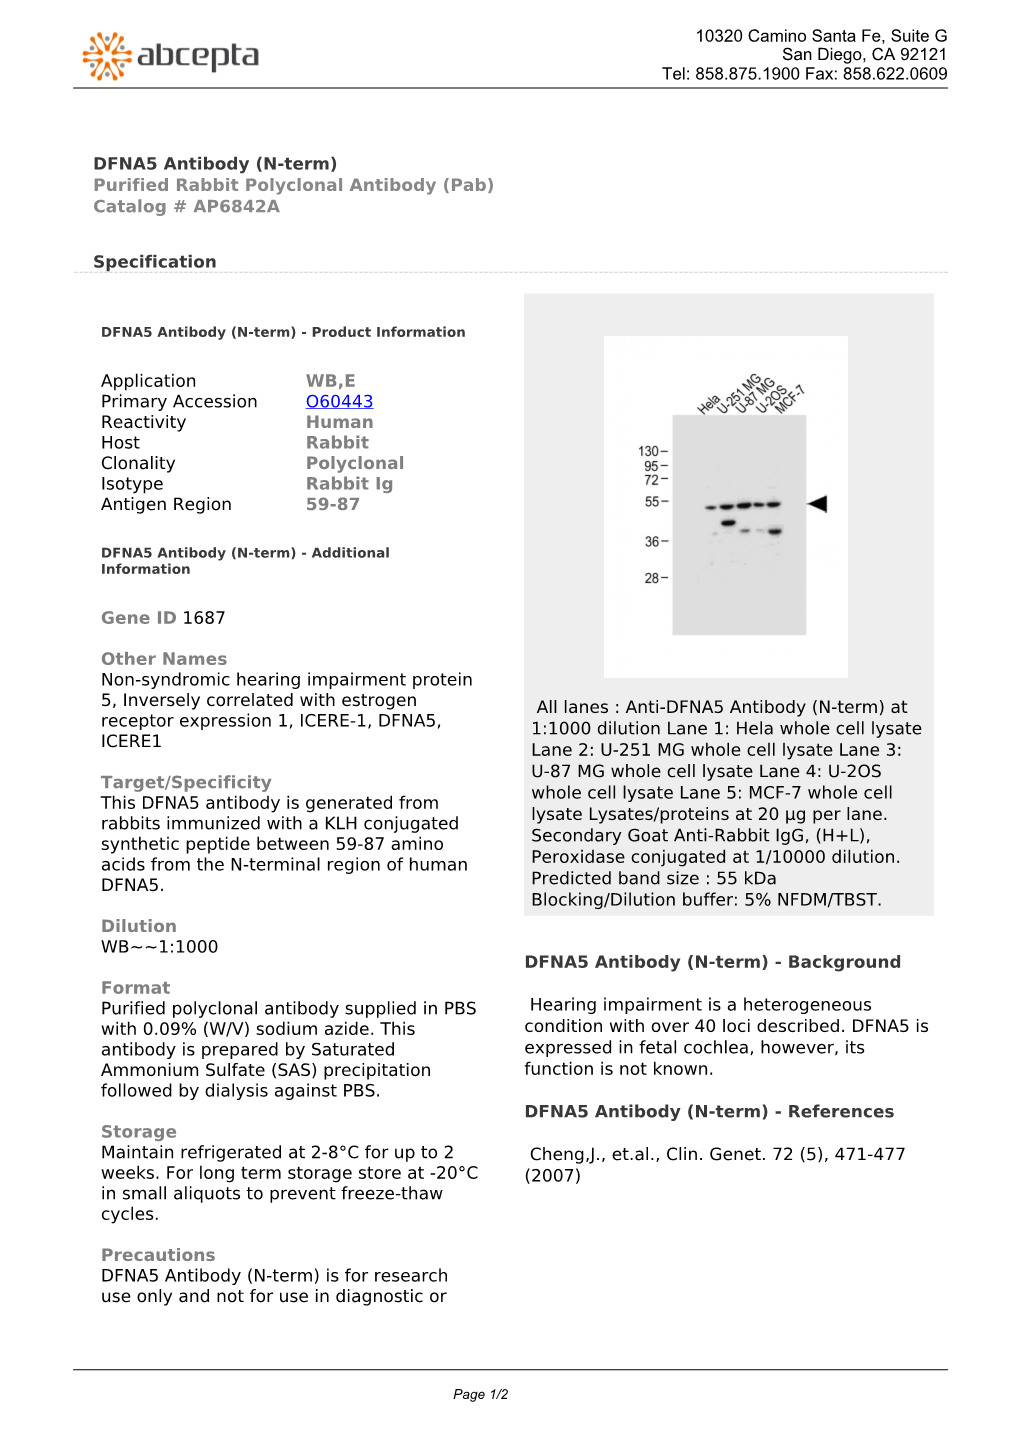 DFNA5 Antibody (N-Term) Purified Rabbit Polyclonal Antibody (Pab) Catalog # AP6842A